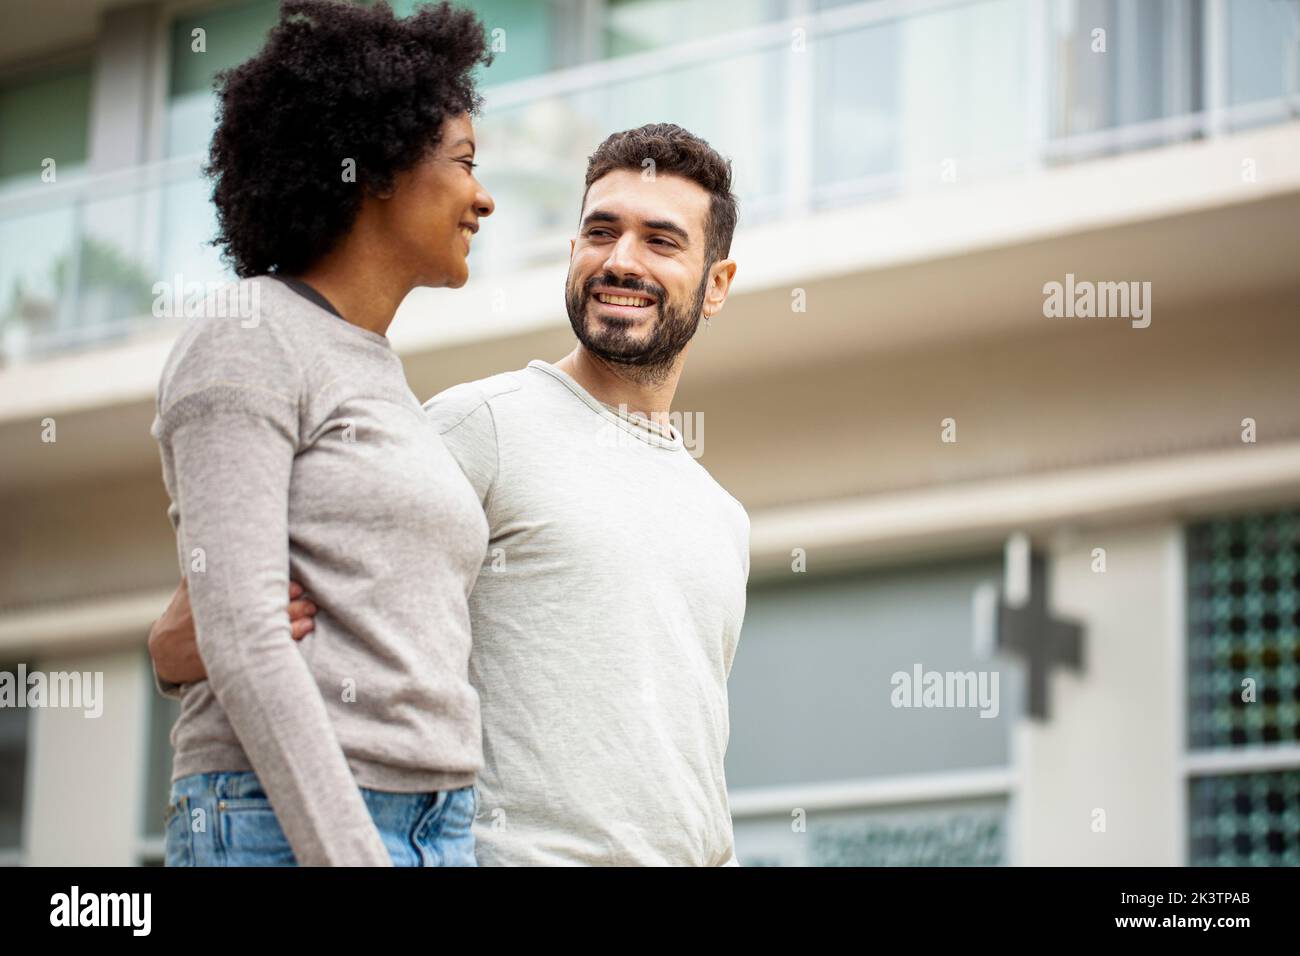 Glückliches junges erwachsenes Paar, das auf dem Bürgersteig läuft Stockfoto